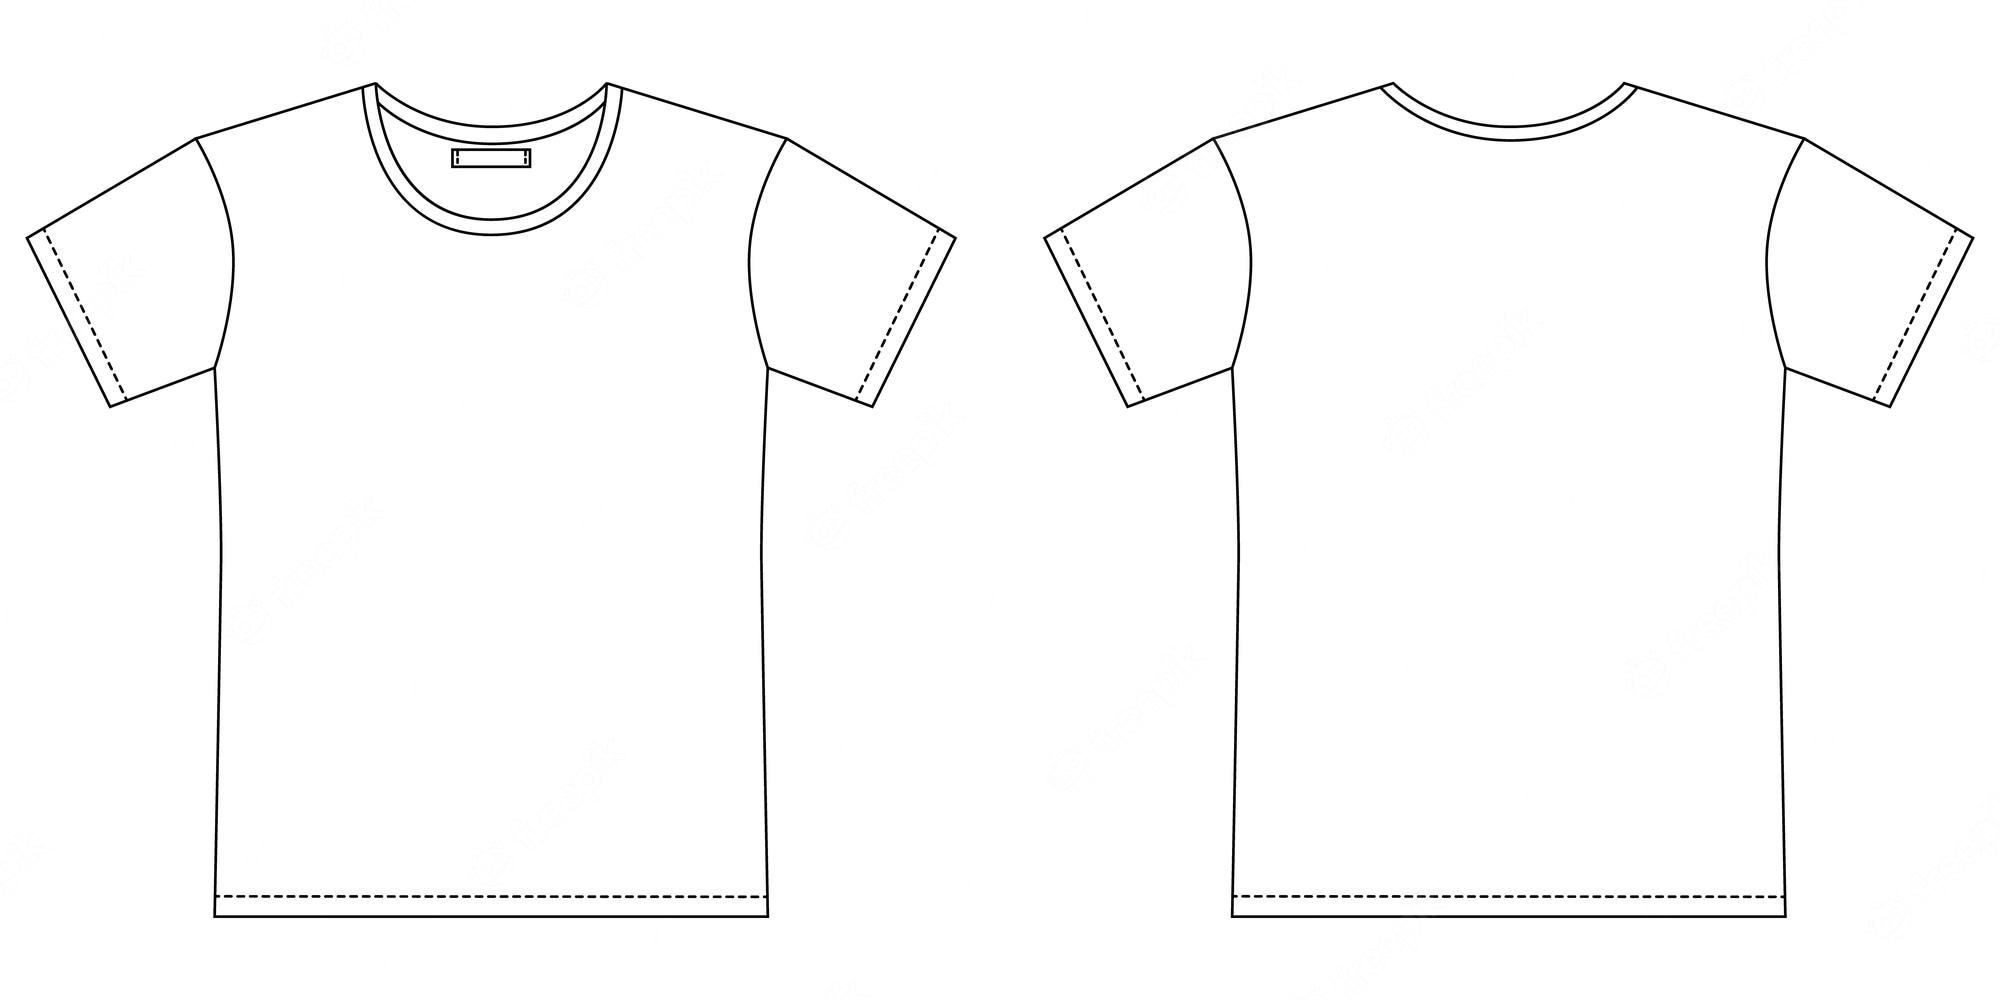 Blank t shirt outline sketch. apparel t-shirt cad design